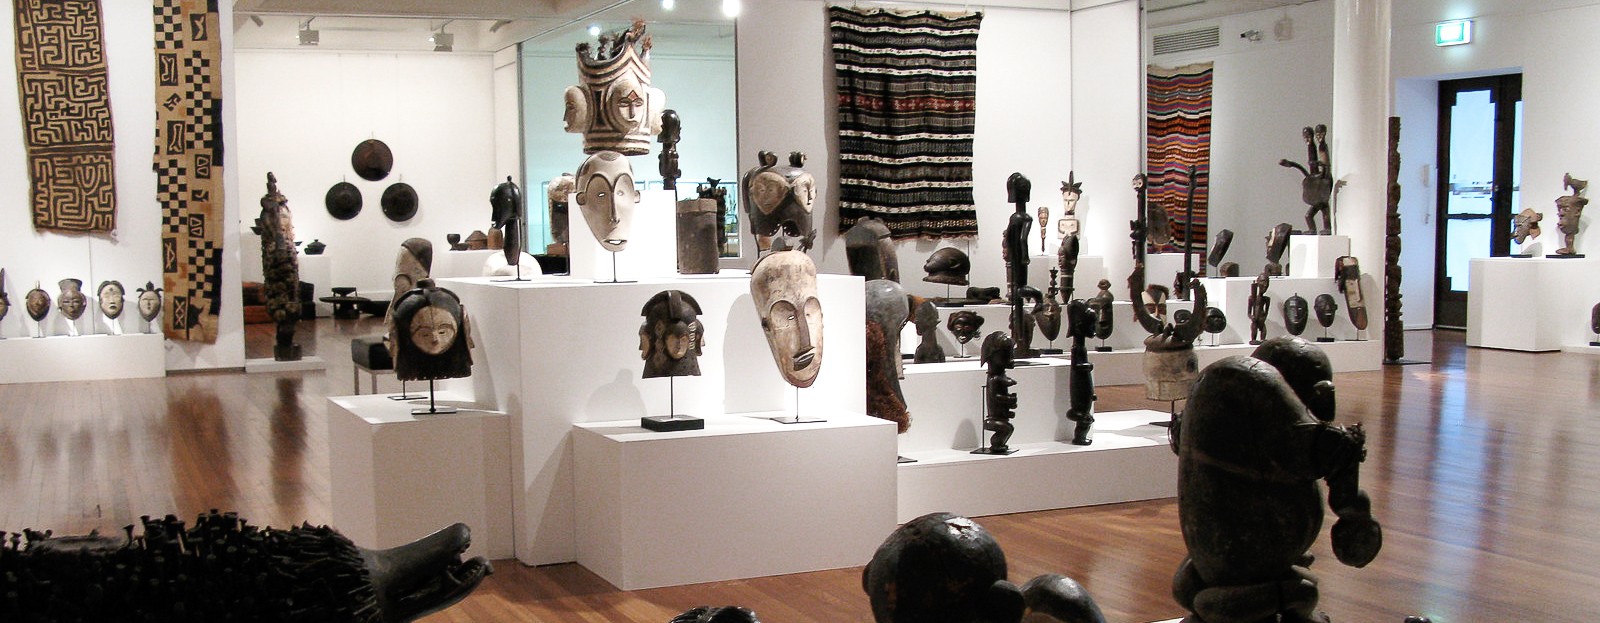 Dans cette galerie d'art africain, on voit des masques et heaumes Fang Ngil et Ngontang, des masques Punu Okuyi, des objets d'art primitif Kongo, des statues Fang Byeri